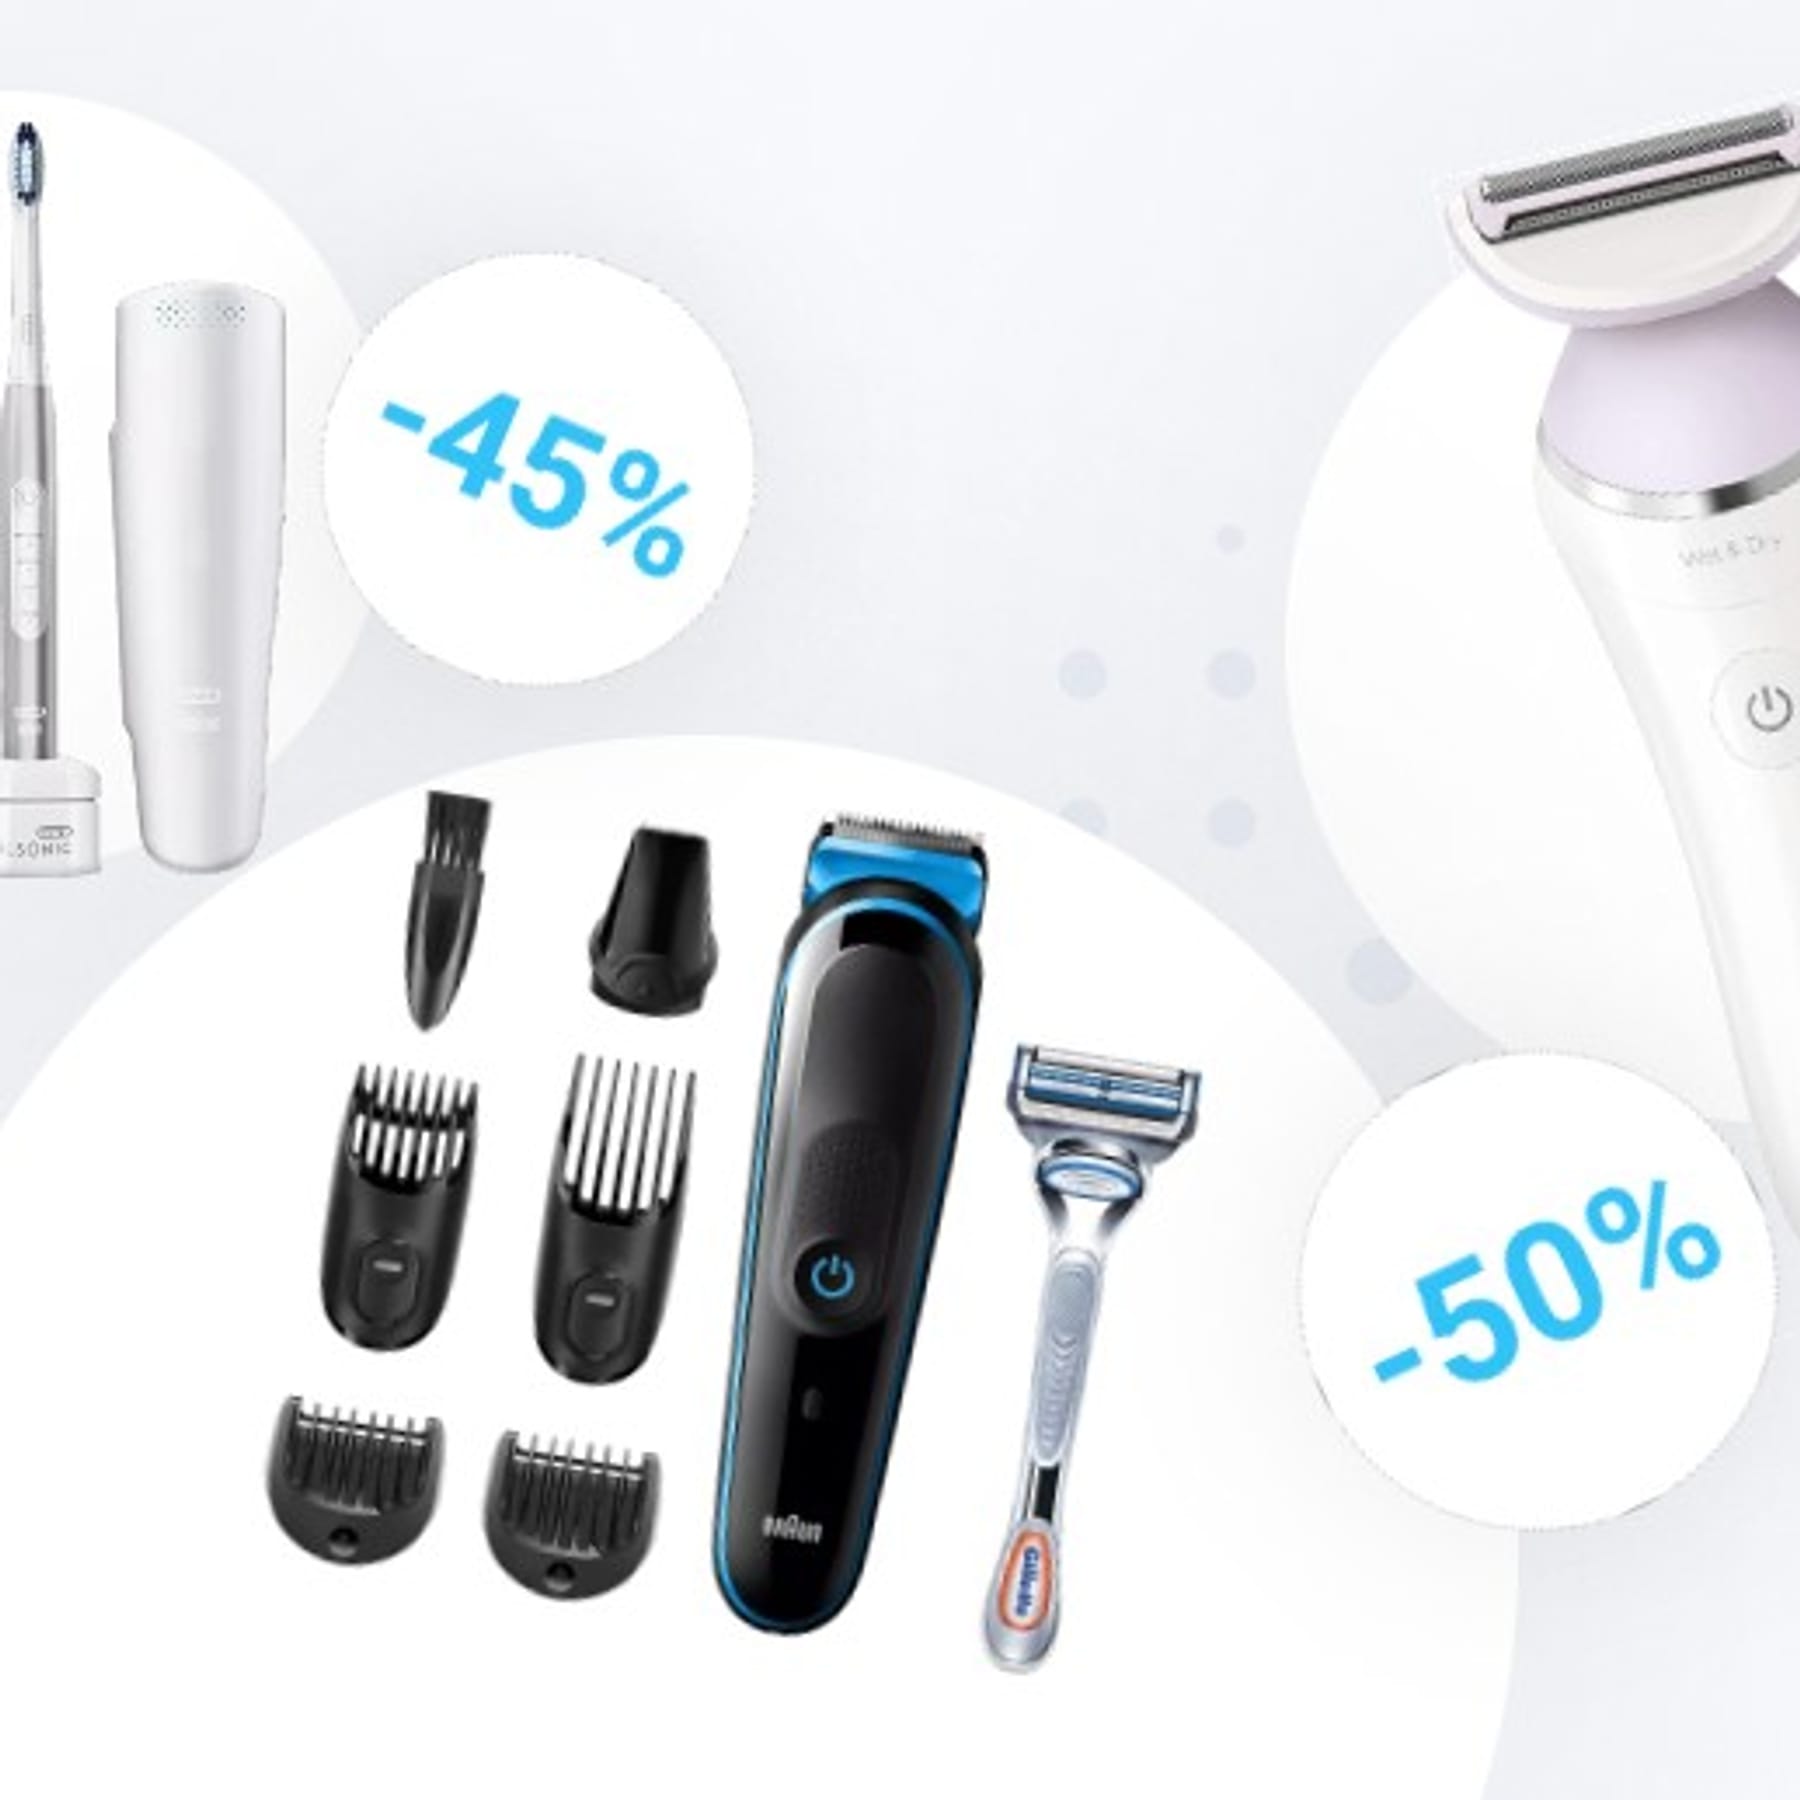 Amazon-Rasierer-Angebote: von zum Philips-Rasierer und Braun Multi-Grooming-Kit Schnäppchenpreis